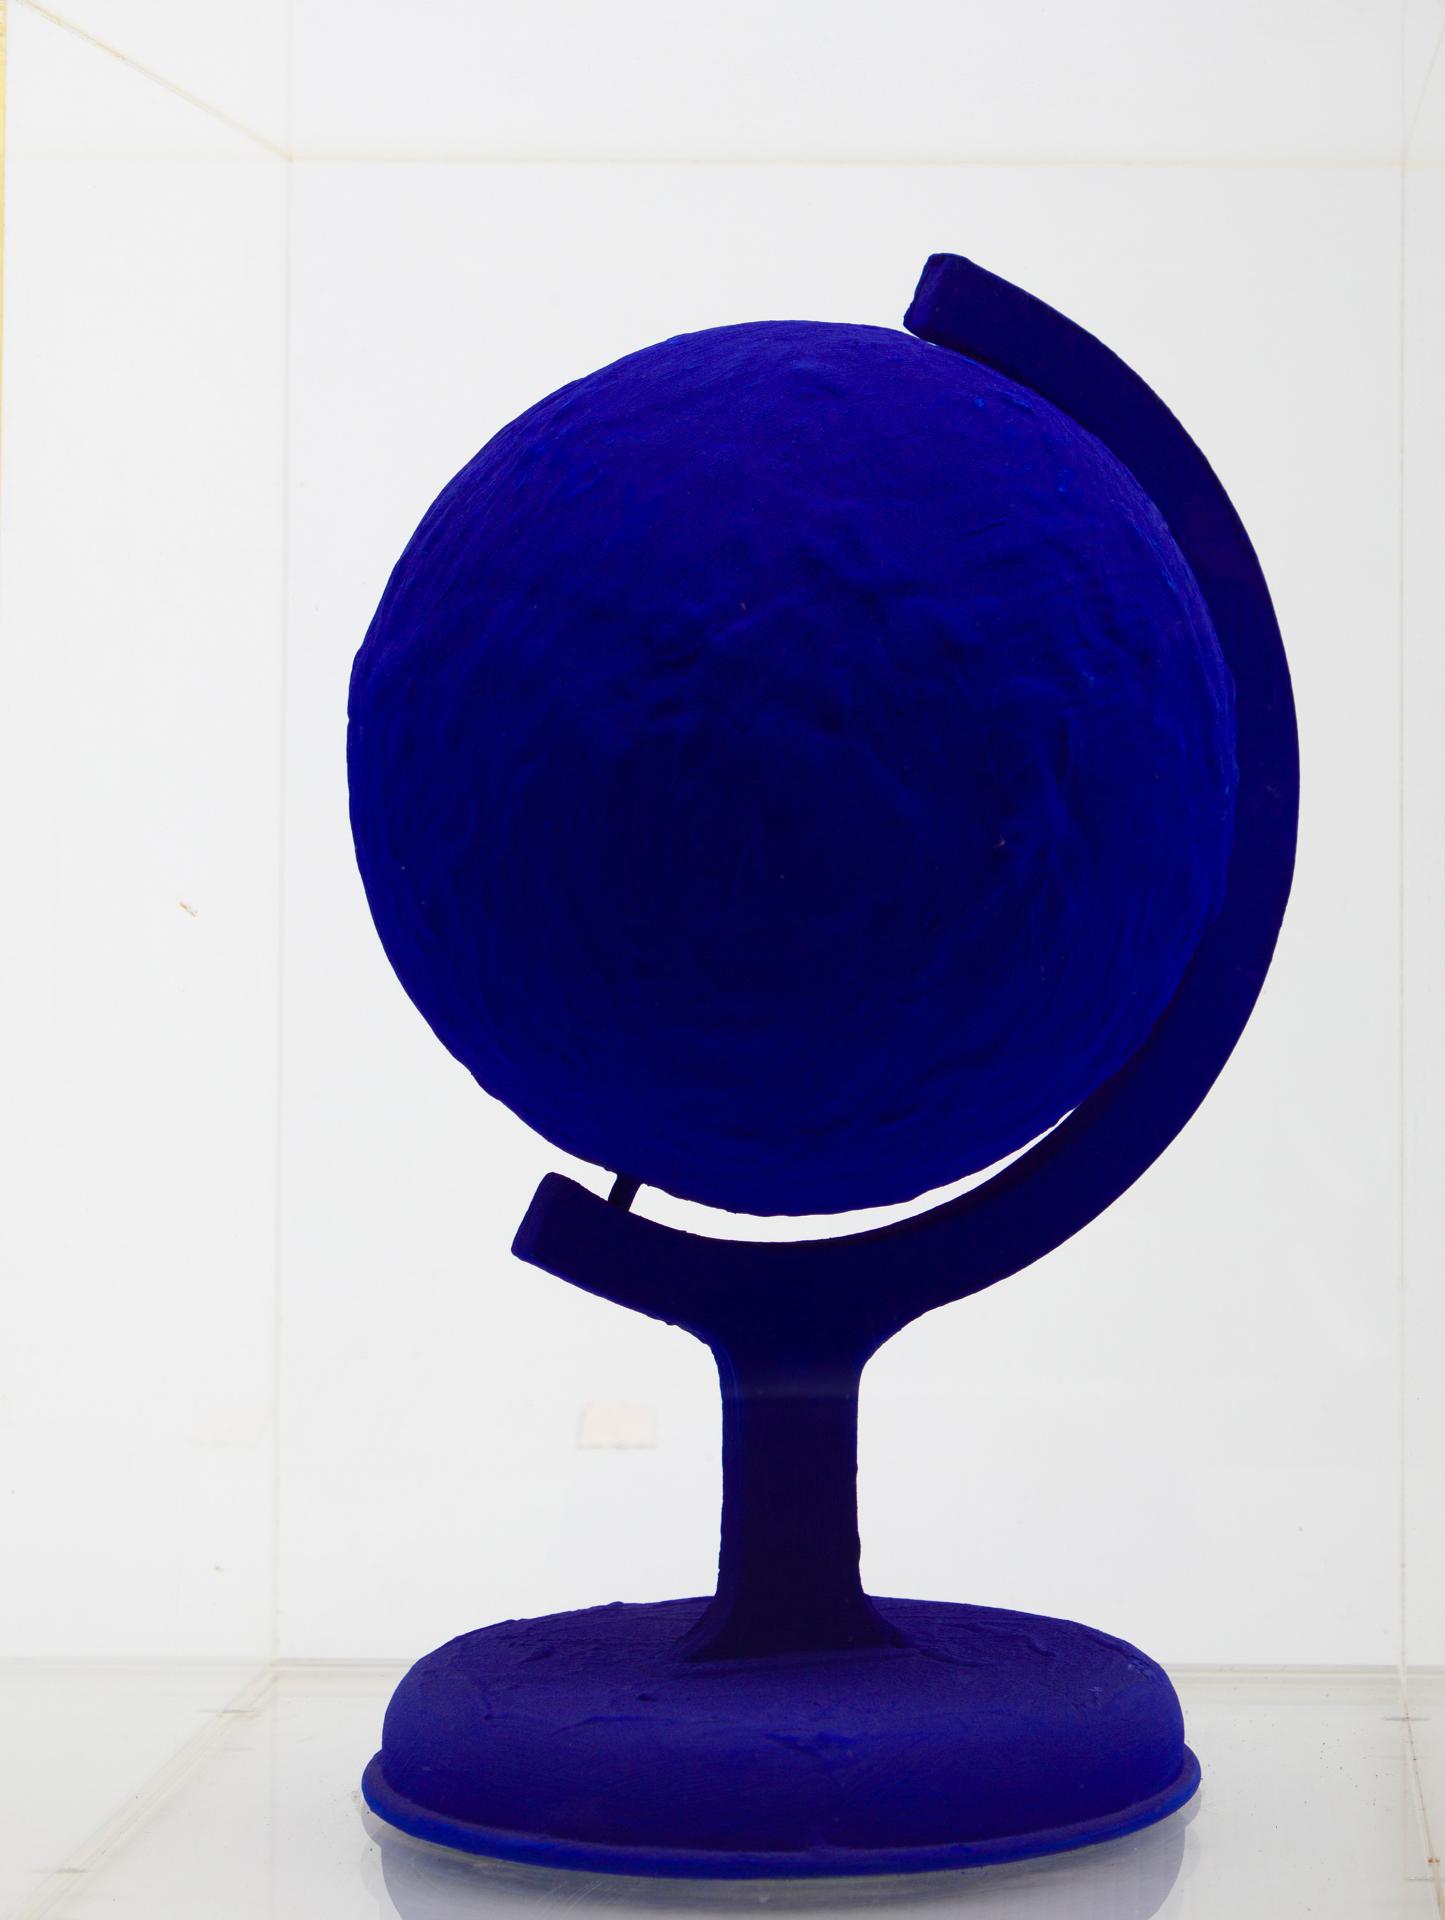 Yves Klein (1928-1962) - La Terre bleue, 1957